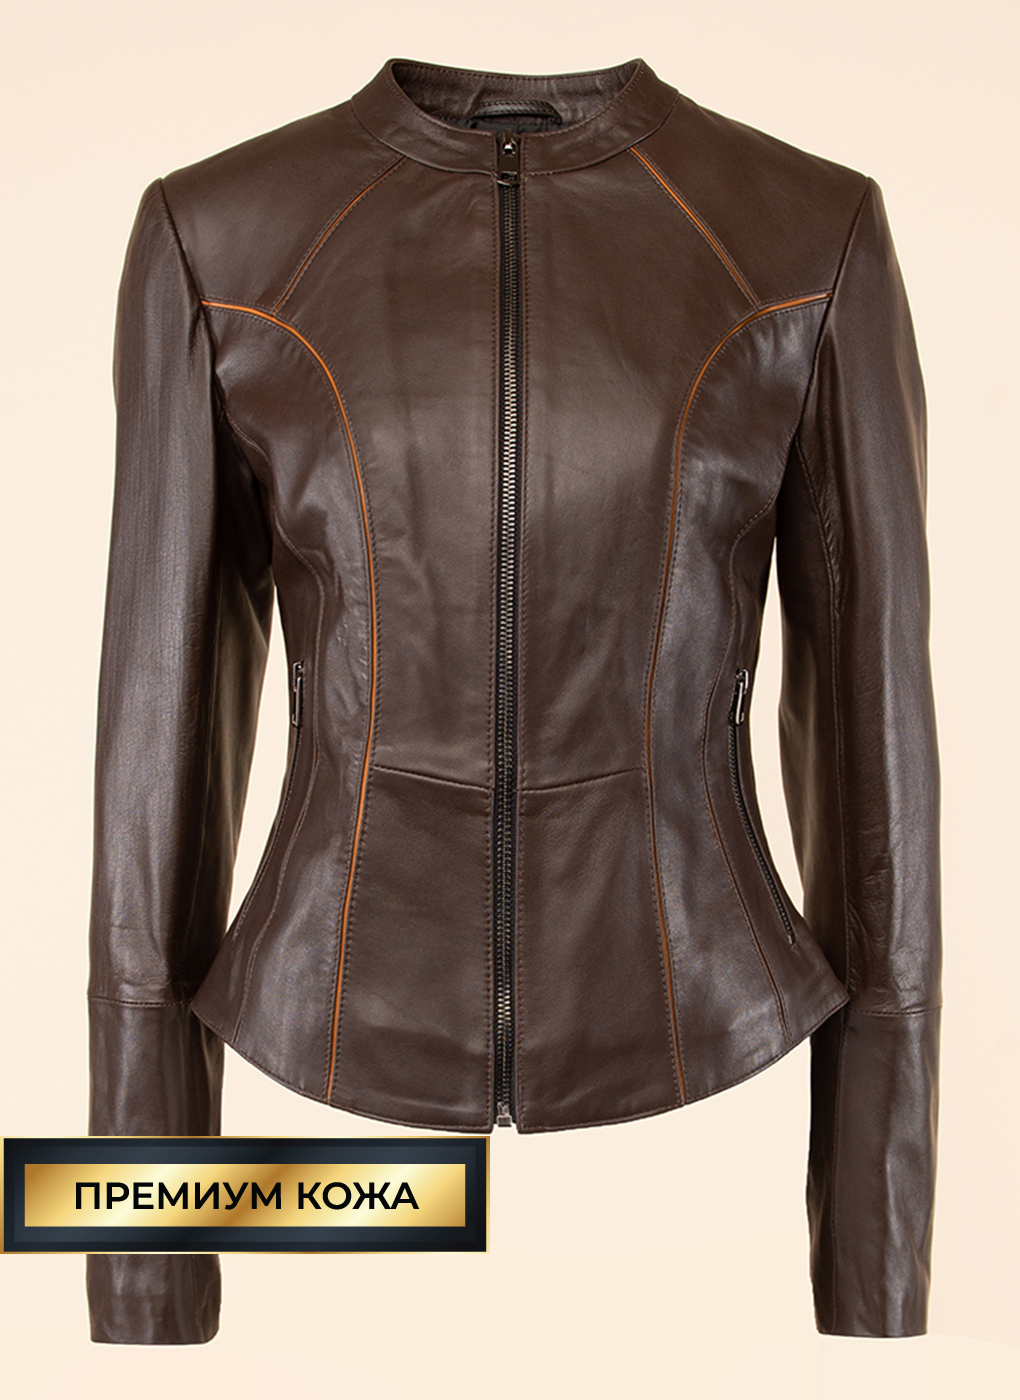 Кожаная куртка женская Каляев 53165 коричневая 52 RU